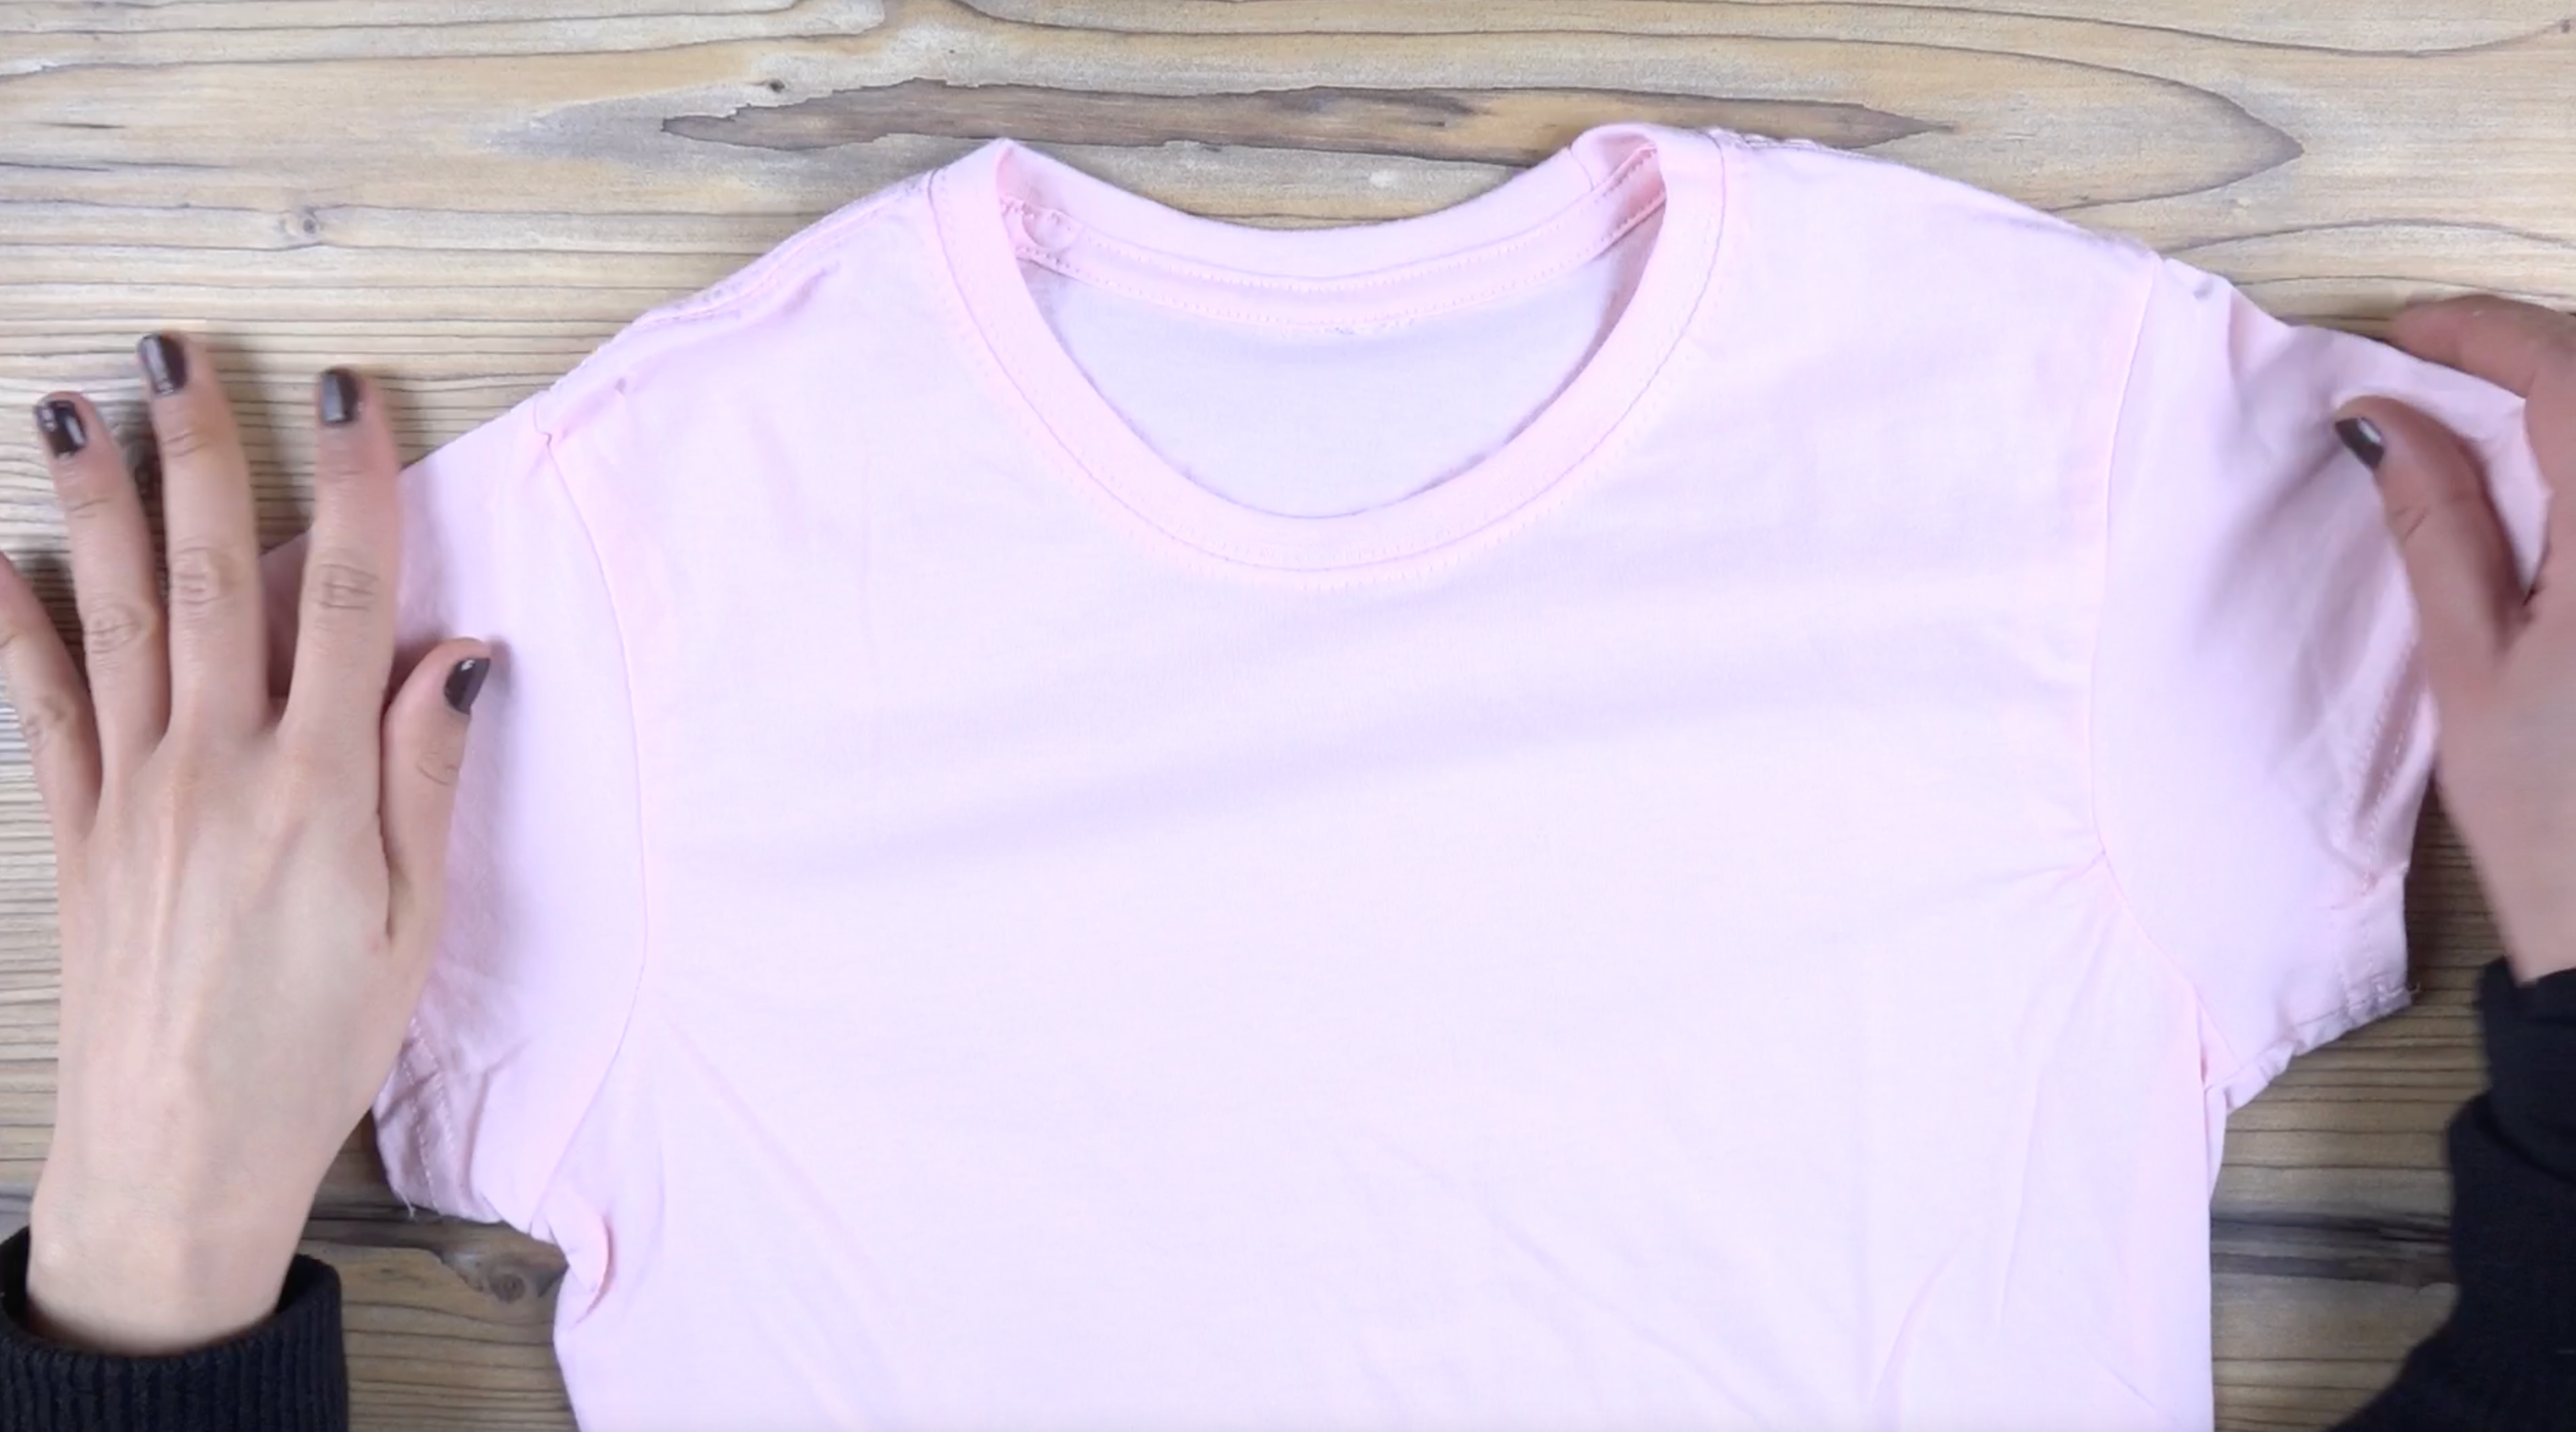 Cómo puedes recuperar el blanco de prendas que se han desteñido de rosa